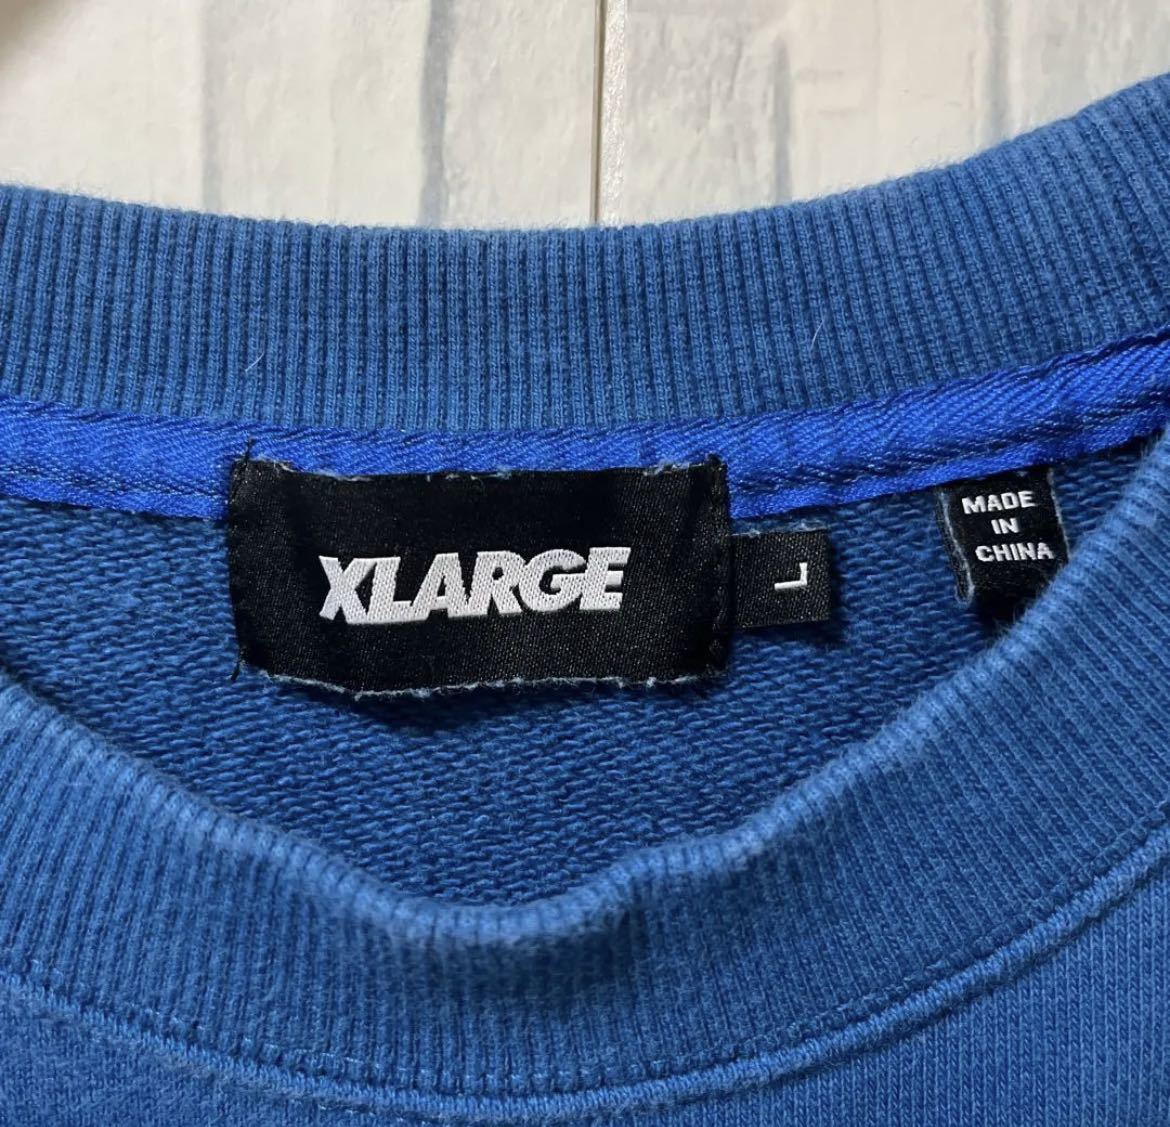 X-LARGE XLARGE エクストララージ トレーナー スウェット サイズL デカロゴ ビッグロゴ プルオーバー くすみブルー 刺繍ロゴ ワッペン